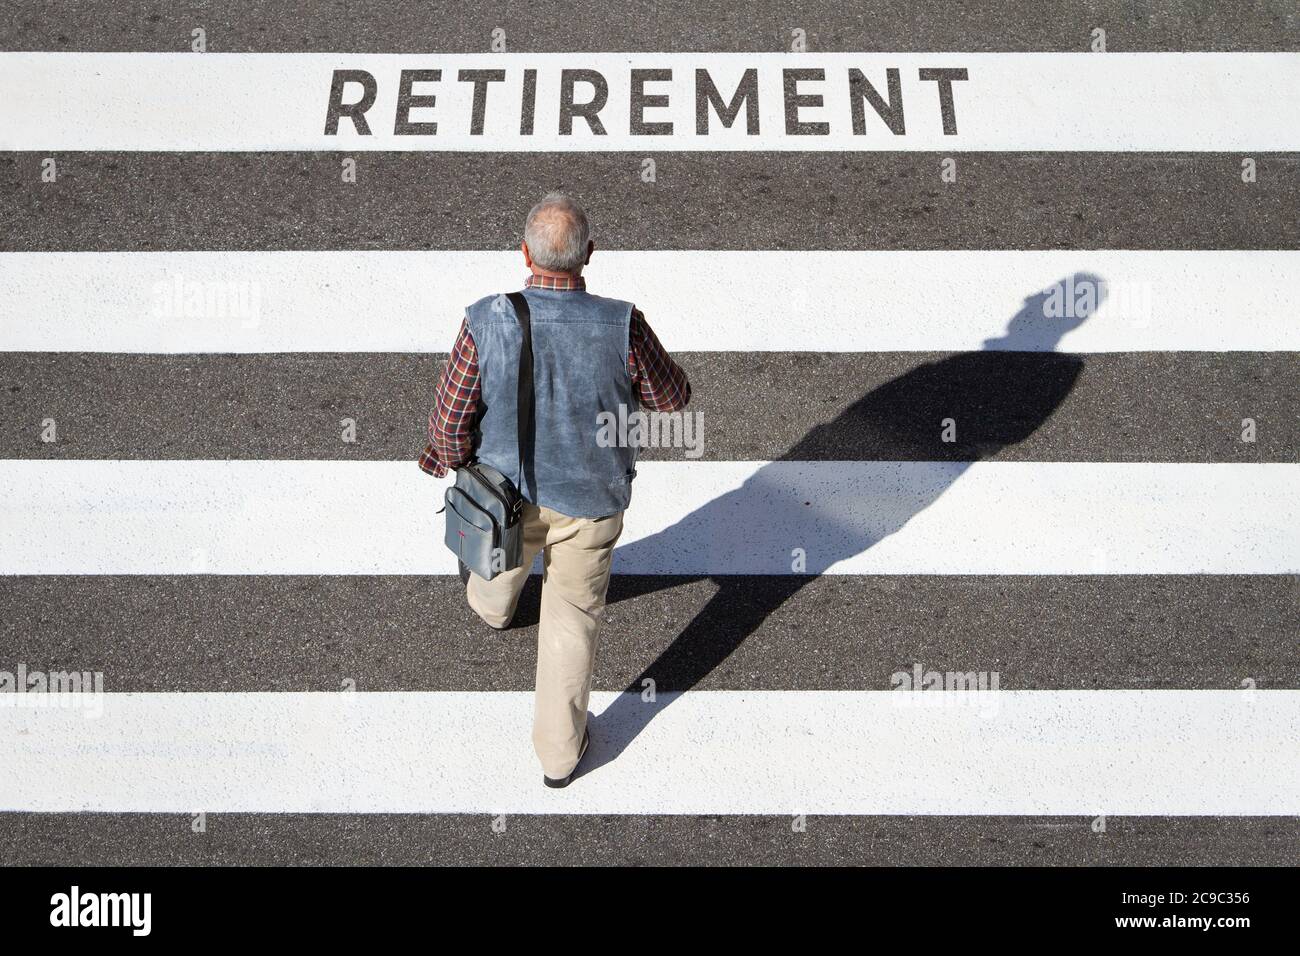 Rentenkonzept. Szene eines älteren Mannes, der in einer Cebra in Richtung Ruhestand geht Text. Draufsicht Stockfoto